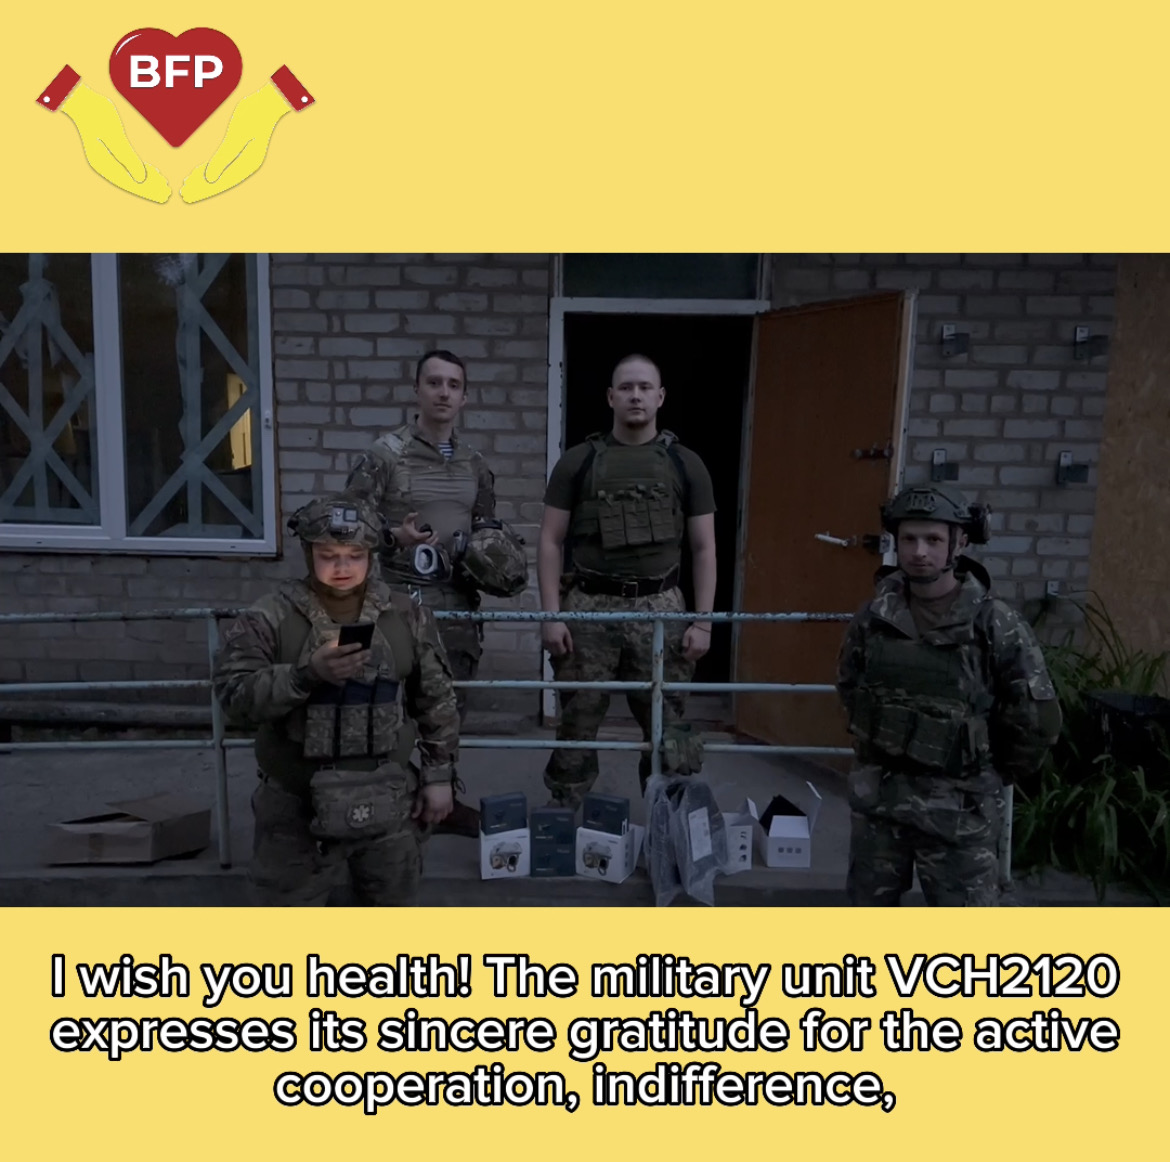 Wir haben den Soldaten in der Ukraine eine Menge humanitärer Hilfe geliefert! 💪